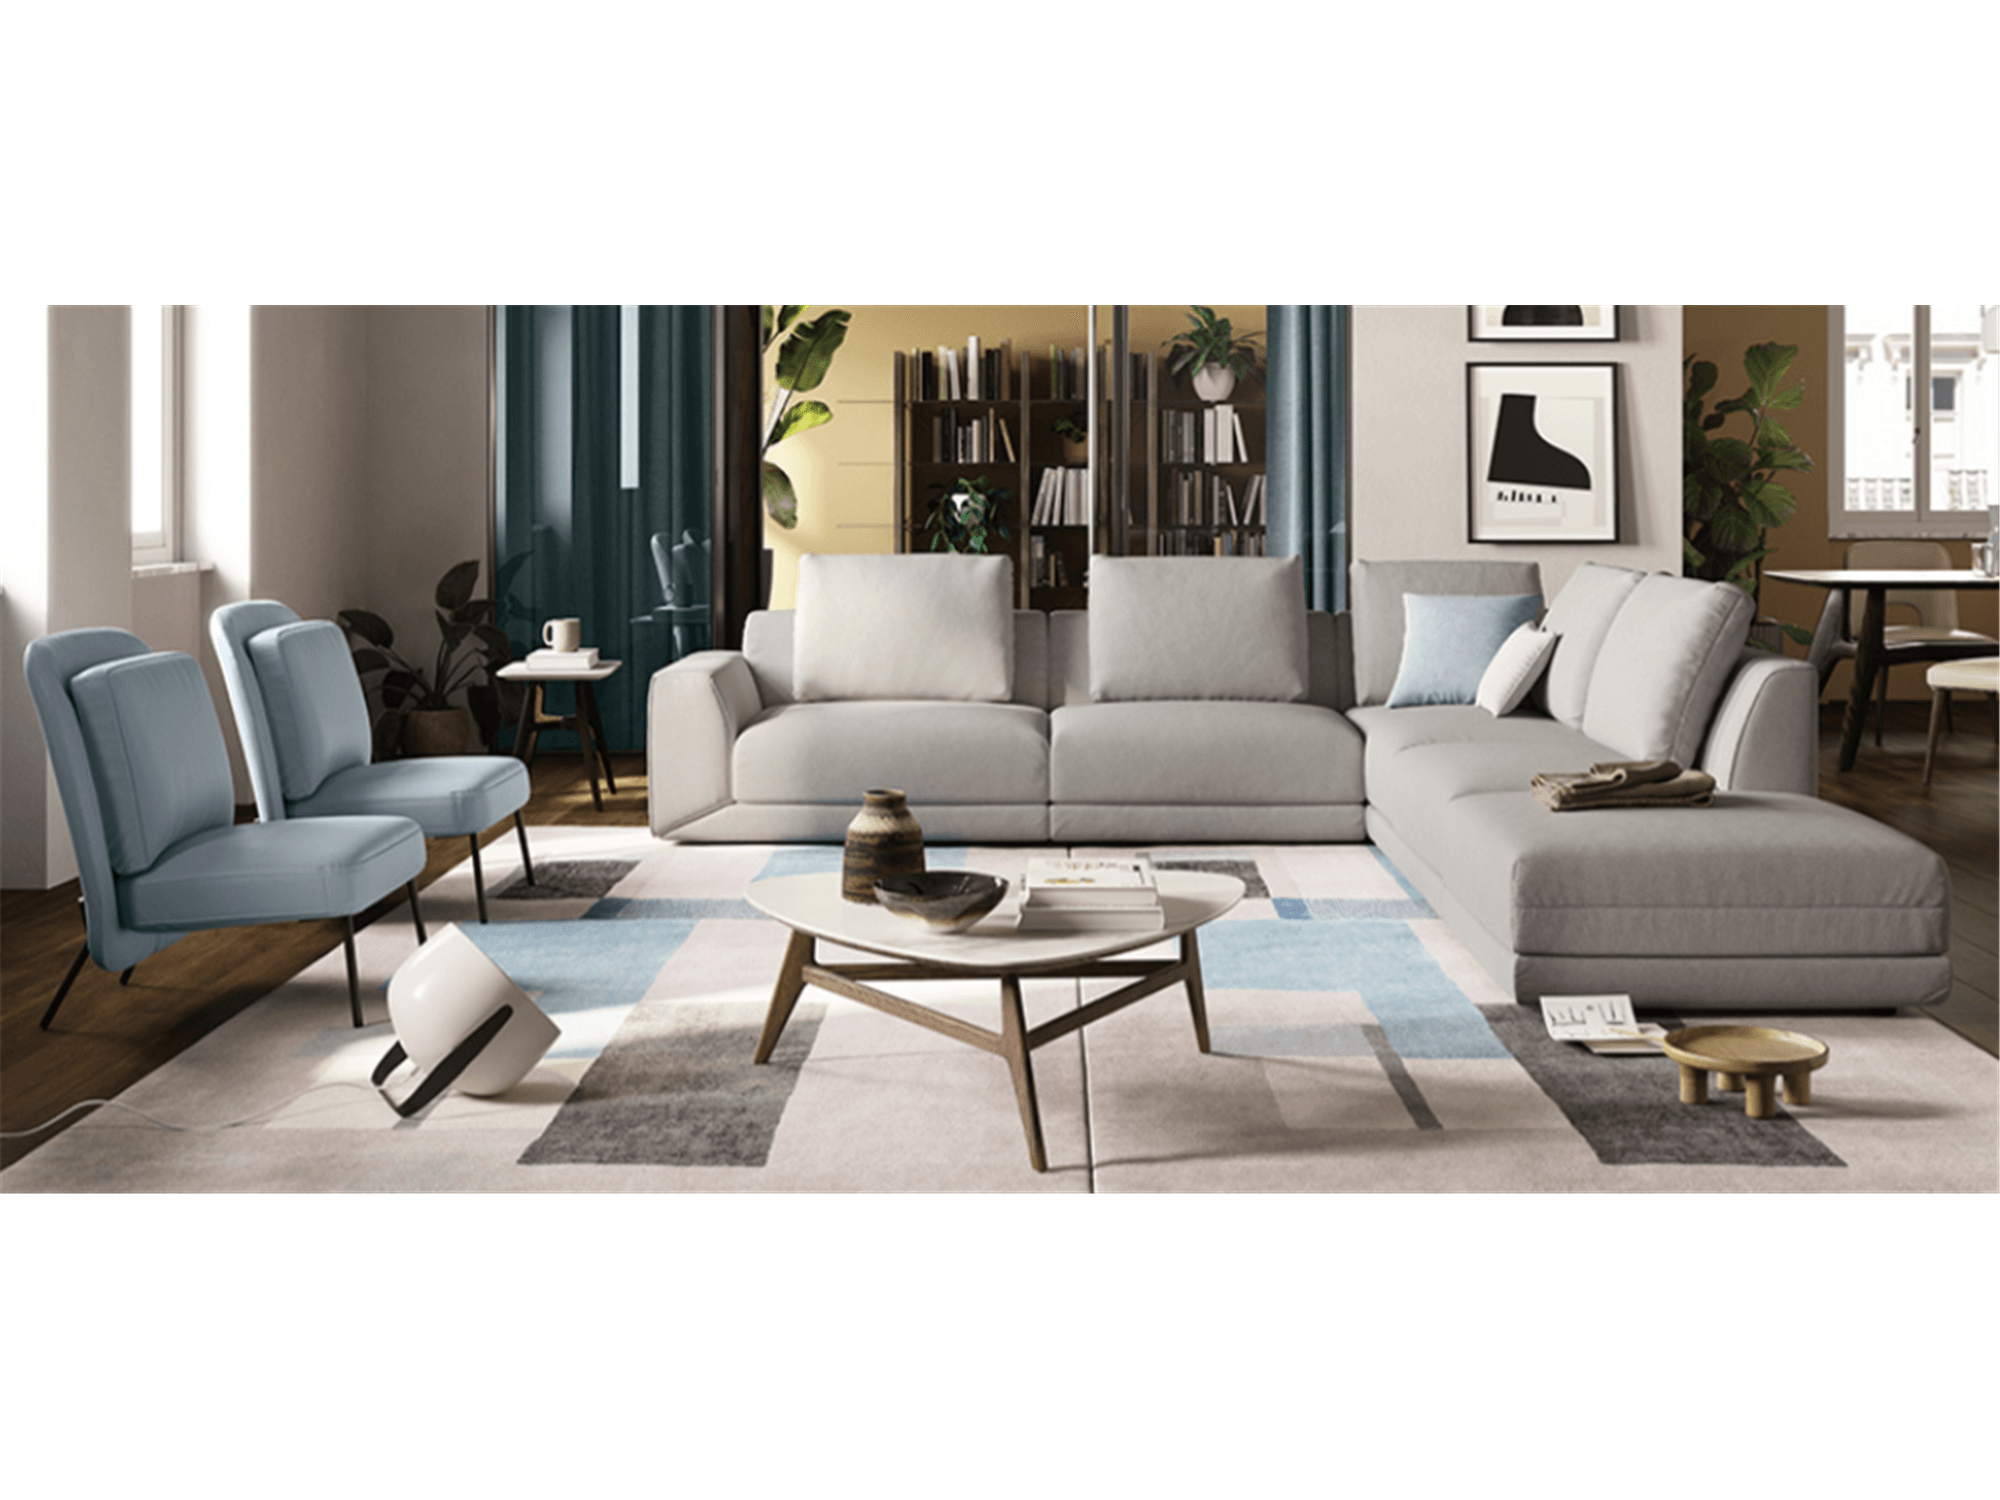 Kartun Sectional - Euro Living Furniture